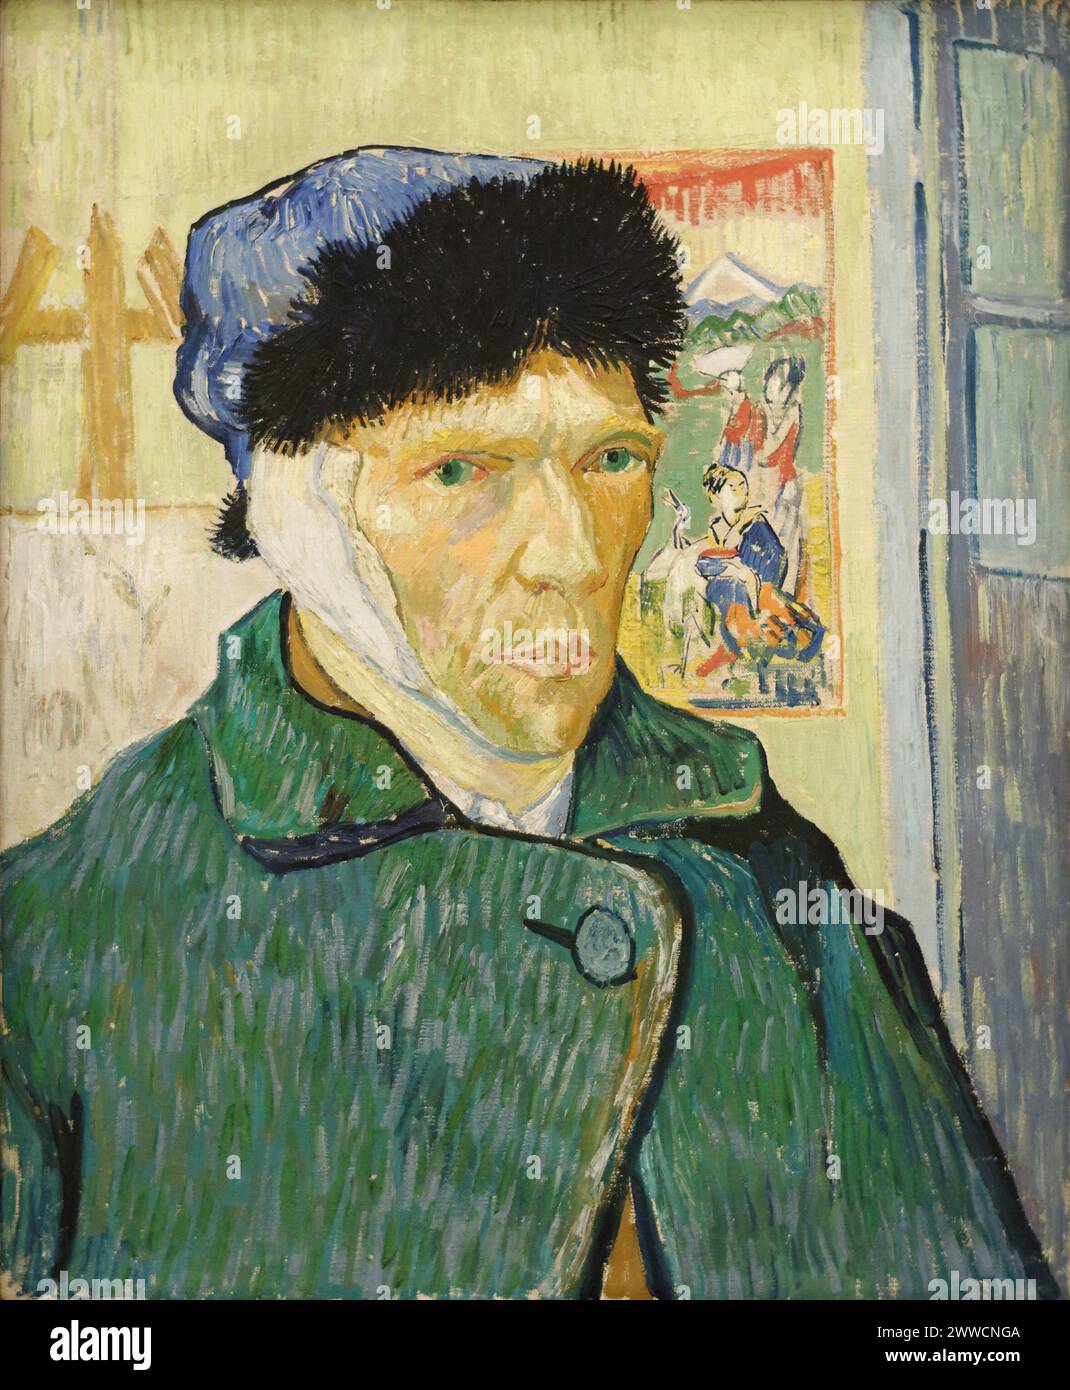 Autoportrait avec oreille bandée, chevalet et tirage japonais, janvier 1889 huile sur toile, 60 × 49 cm Courtauld Institute Galleries, Londres (F527) Vincent van Gogh - Banque D'Images